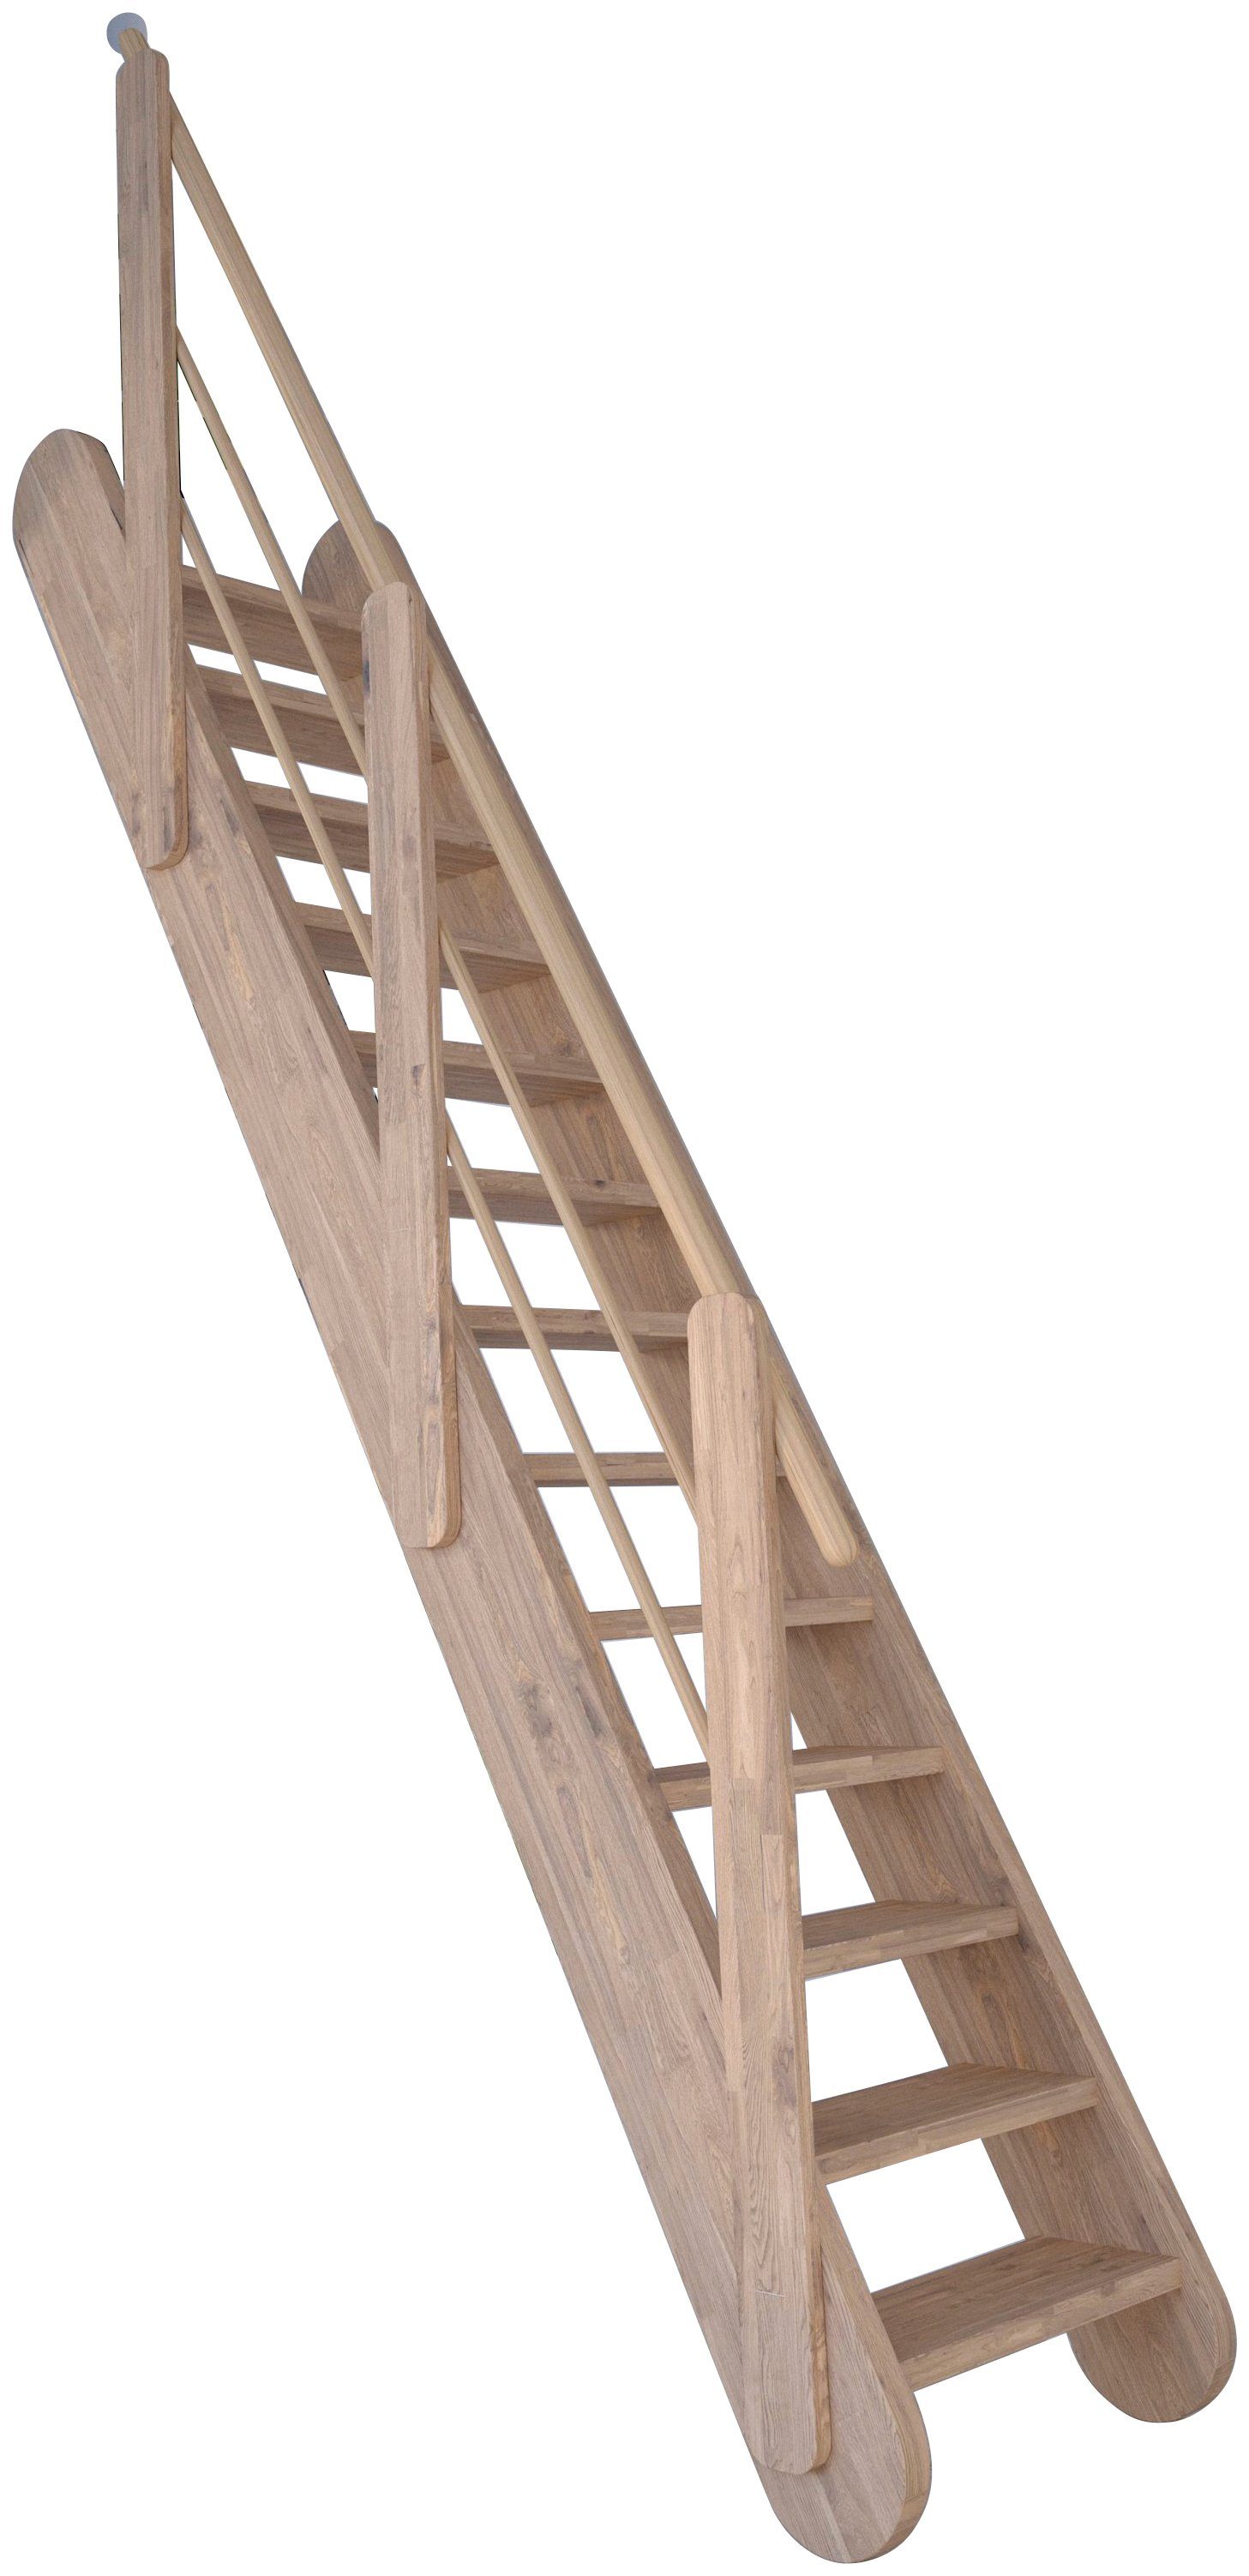 Massivholz Wangenteile Stufen Samos, offen, Geländer, Starwood Durchgehende Raumspartreppe Holz-Holz Design